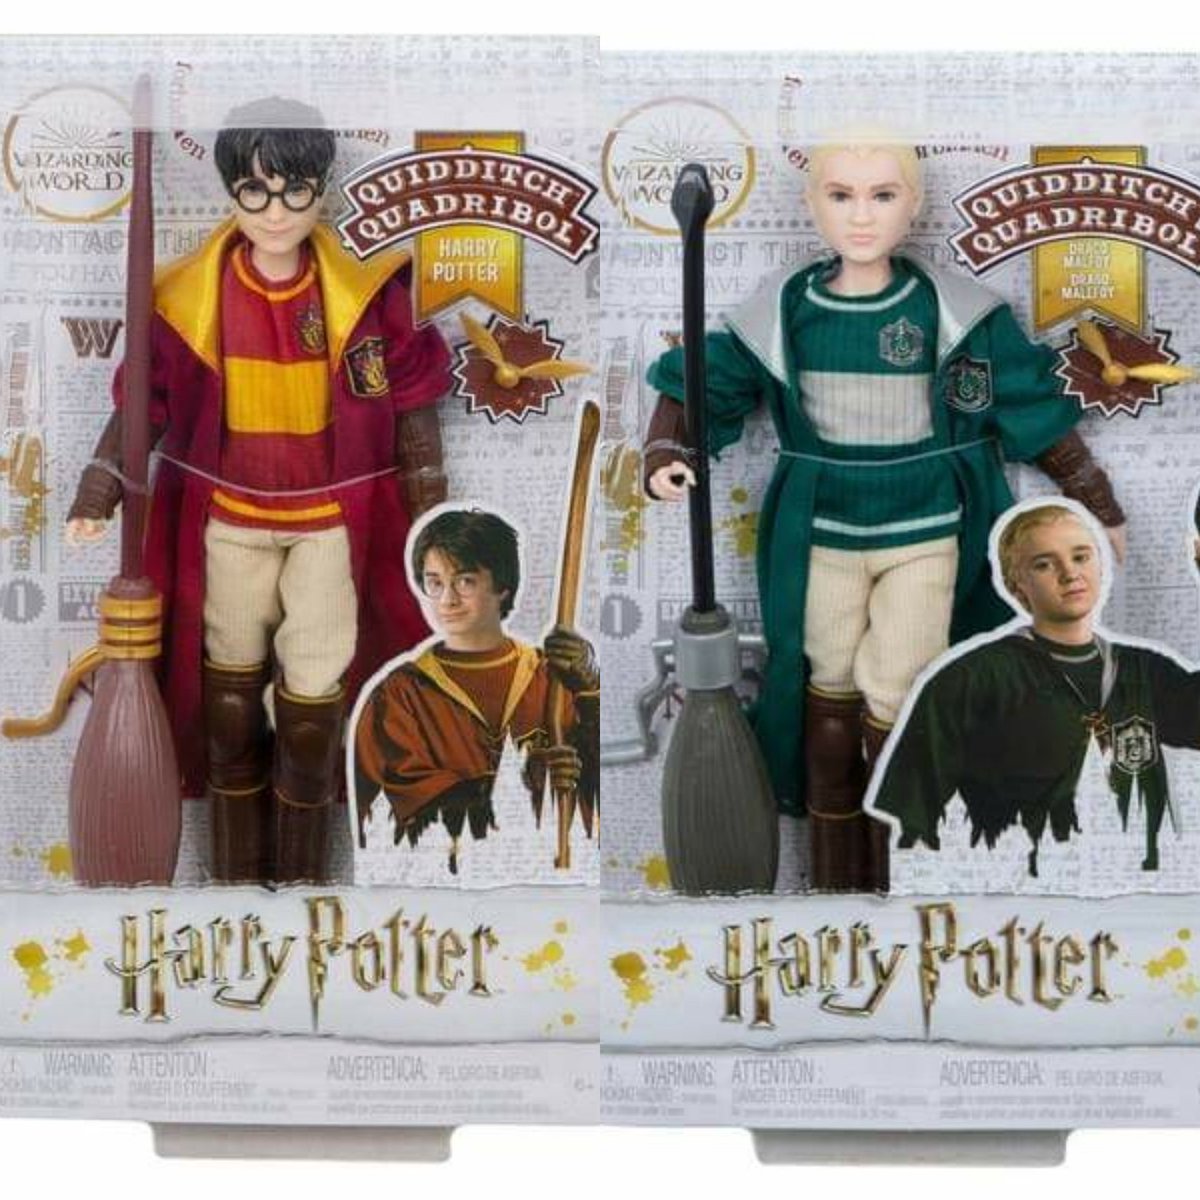 Univers Harry Potter on X: #ProduitsDérivés : @Mattel ajoutera  prochainement deux nouvelles poupées barbisées aux six qui composent déjà  sa collection dédiées à la saga #HarryPotter (ICI 👉   Les poupées Harry